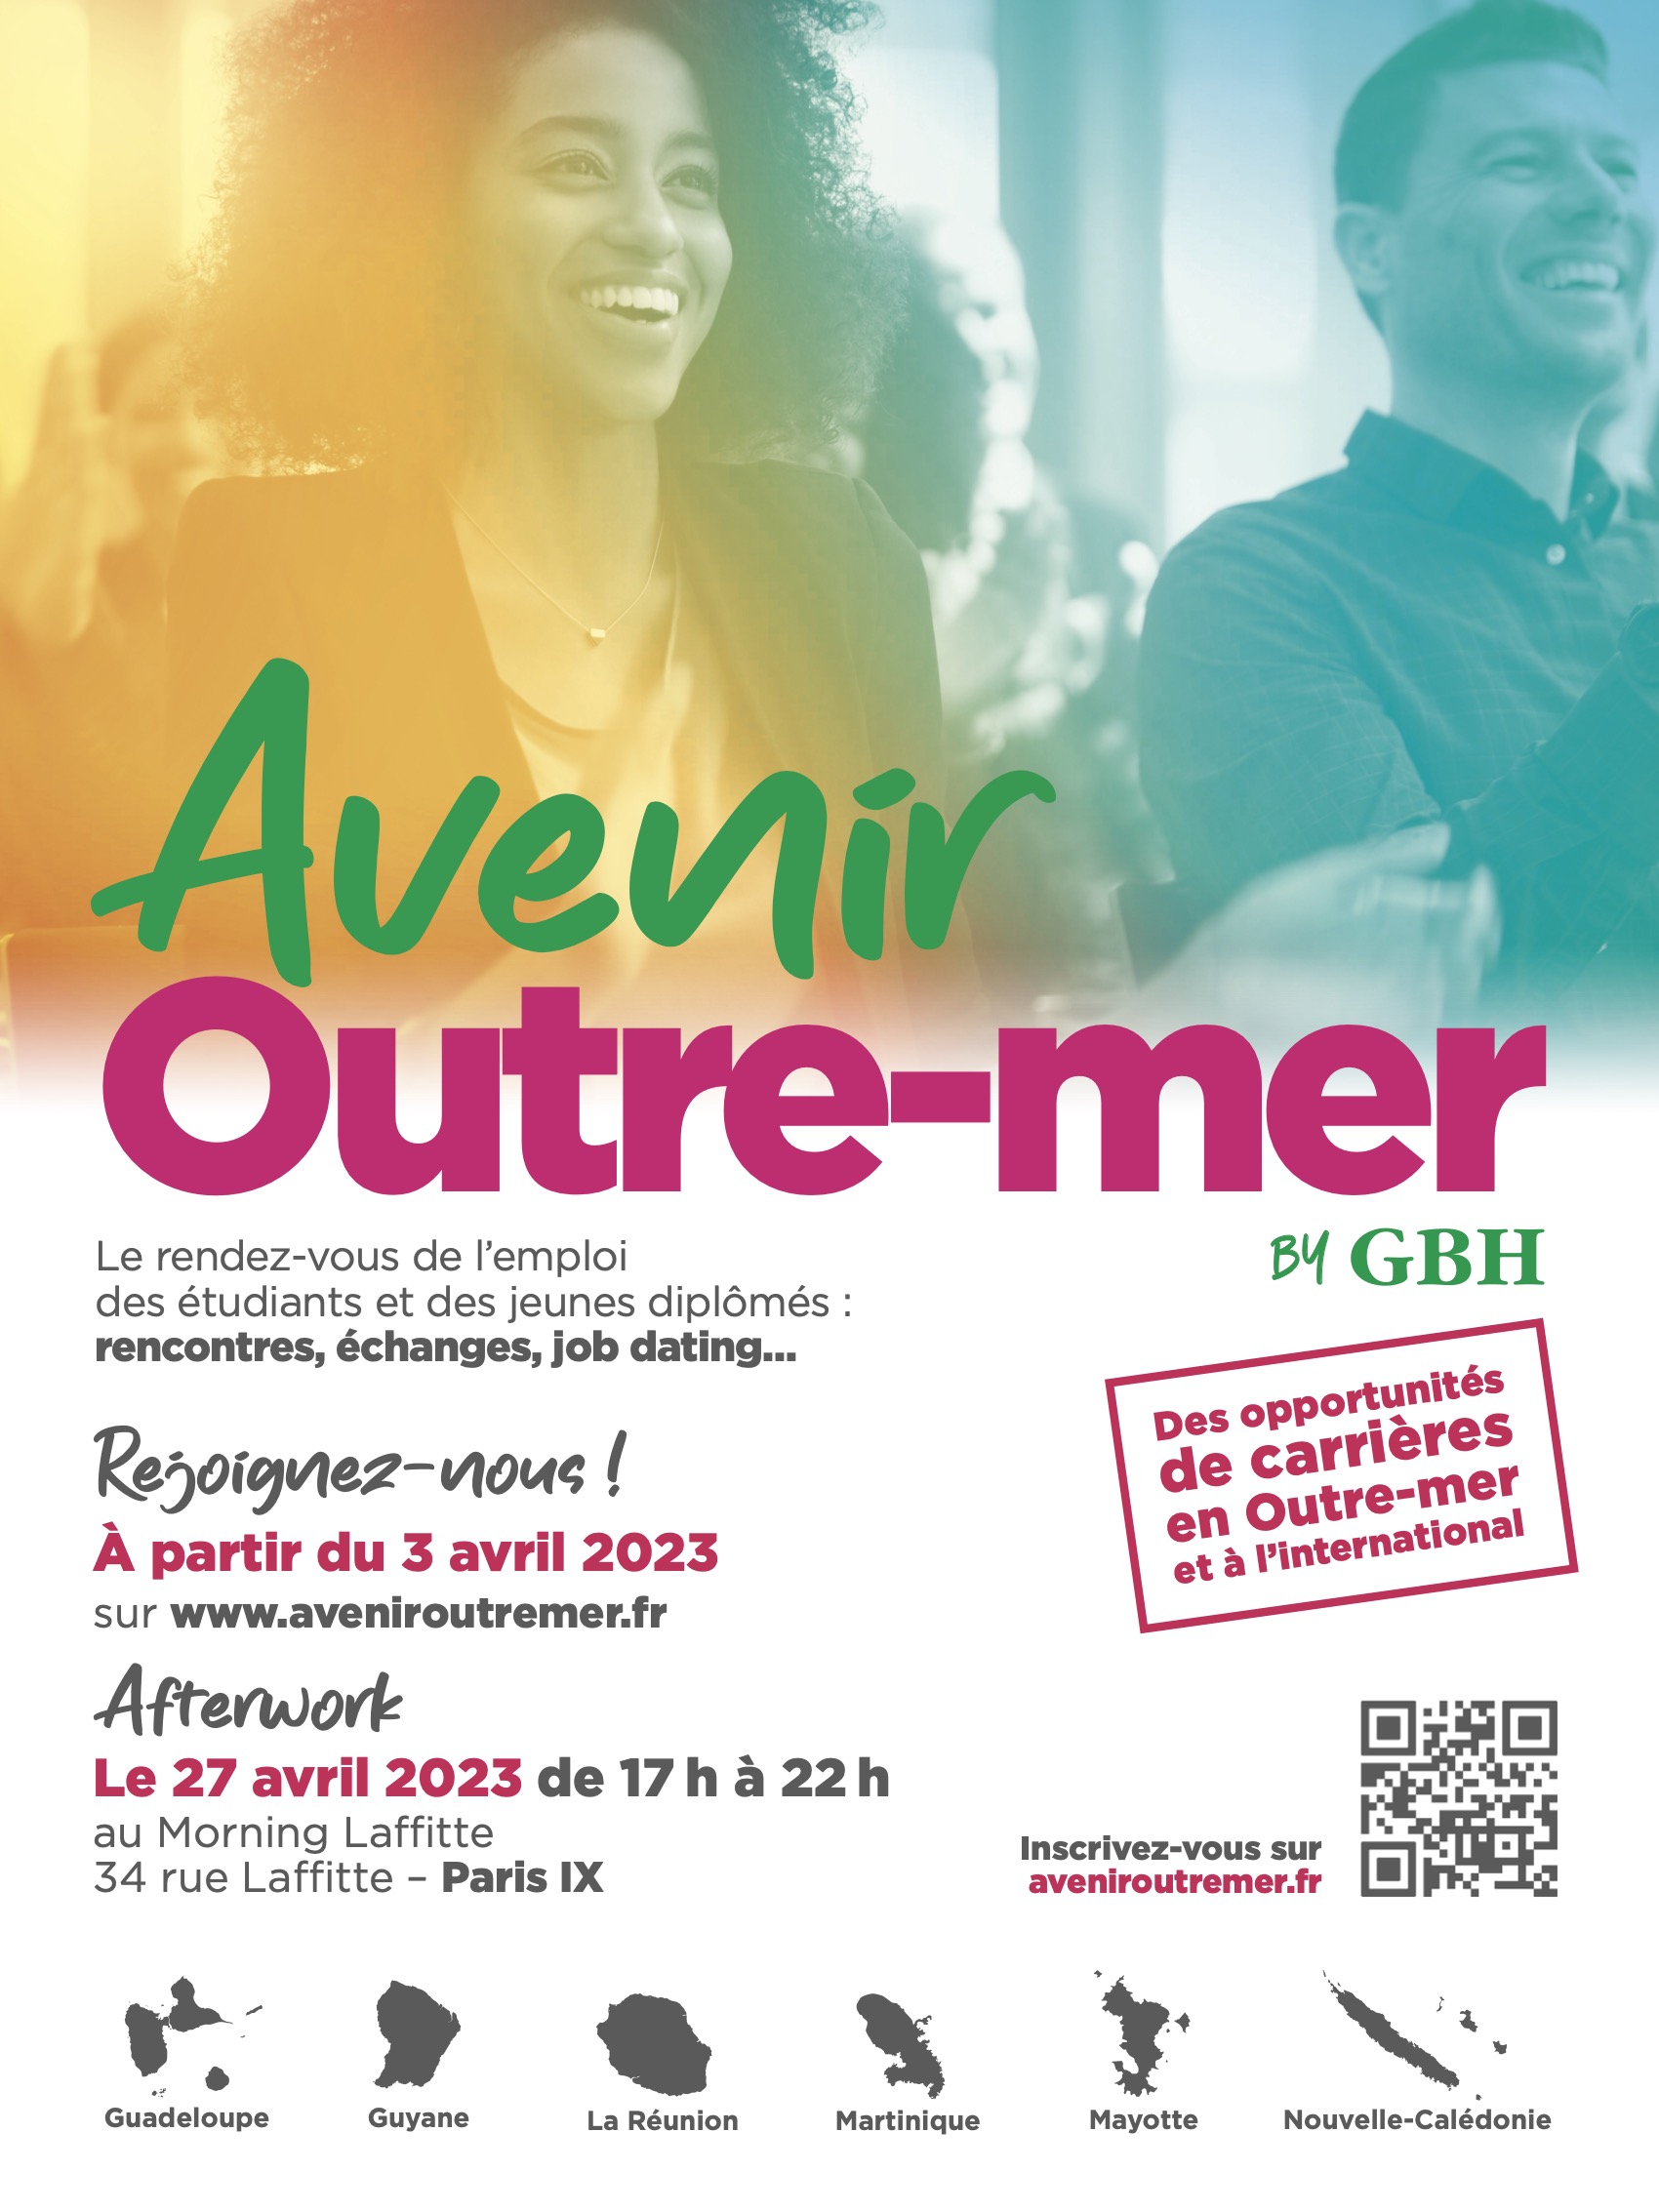 Avenir Outre-mer by GBH : Le rendez-vous de l’emploi des étudiants et des jeunes diplômés pour rester ou revenir à La Réunion